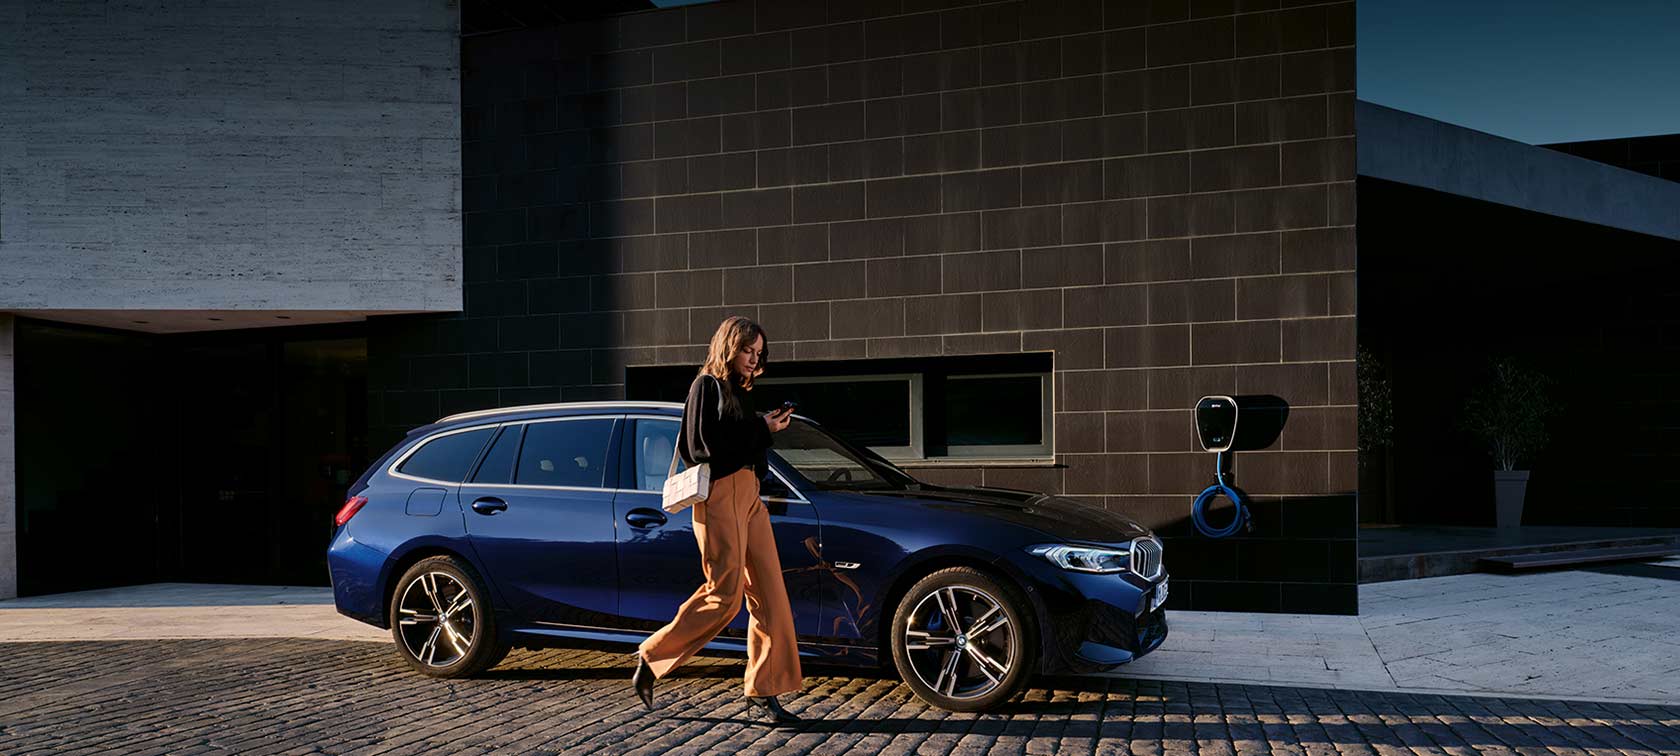 BMW REPAIR INCLUSIVE - DIE REPARATURKOSTENVERSICHERUNG BIS 10 JAHRE